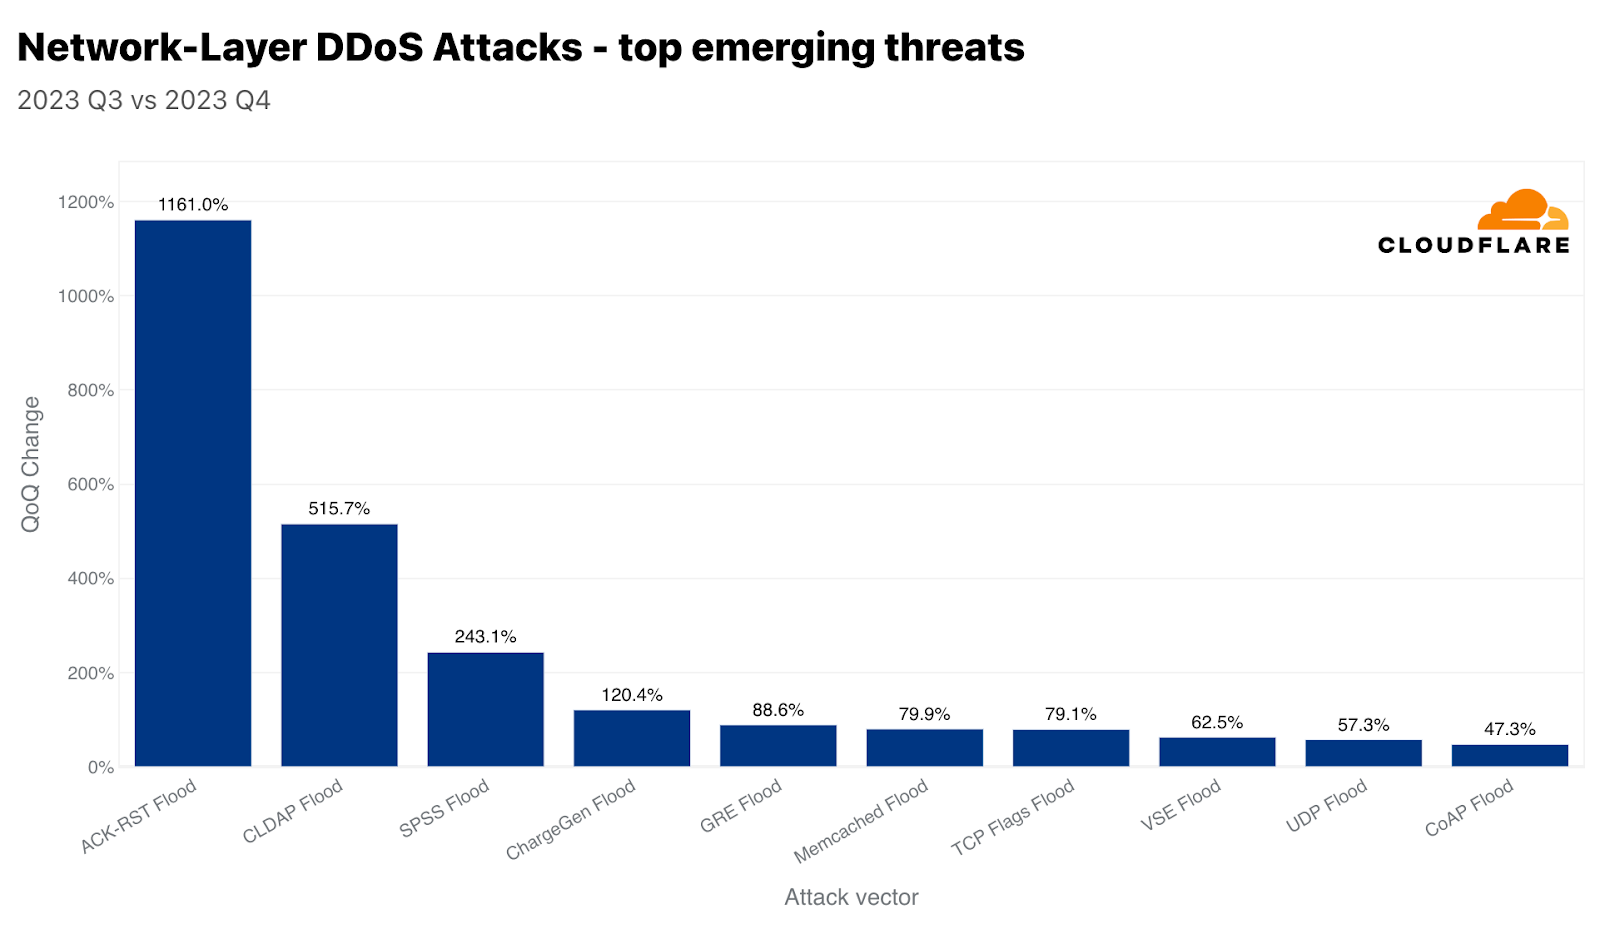 Top emerging attack vectors